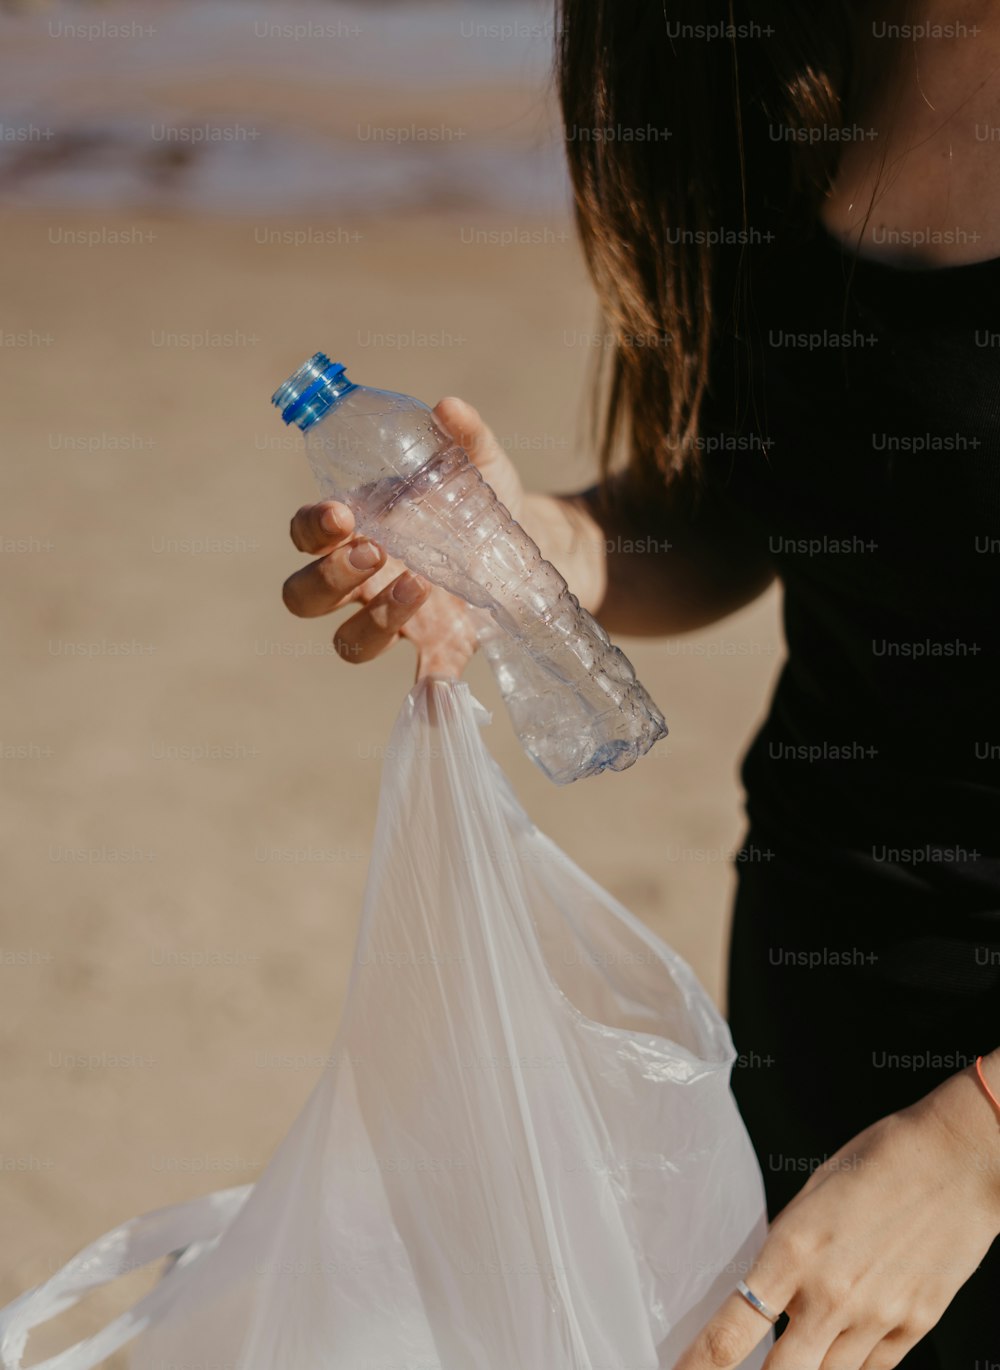 eine Frau, die eine Plastiktüte und eine Wasserflasche hält